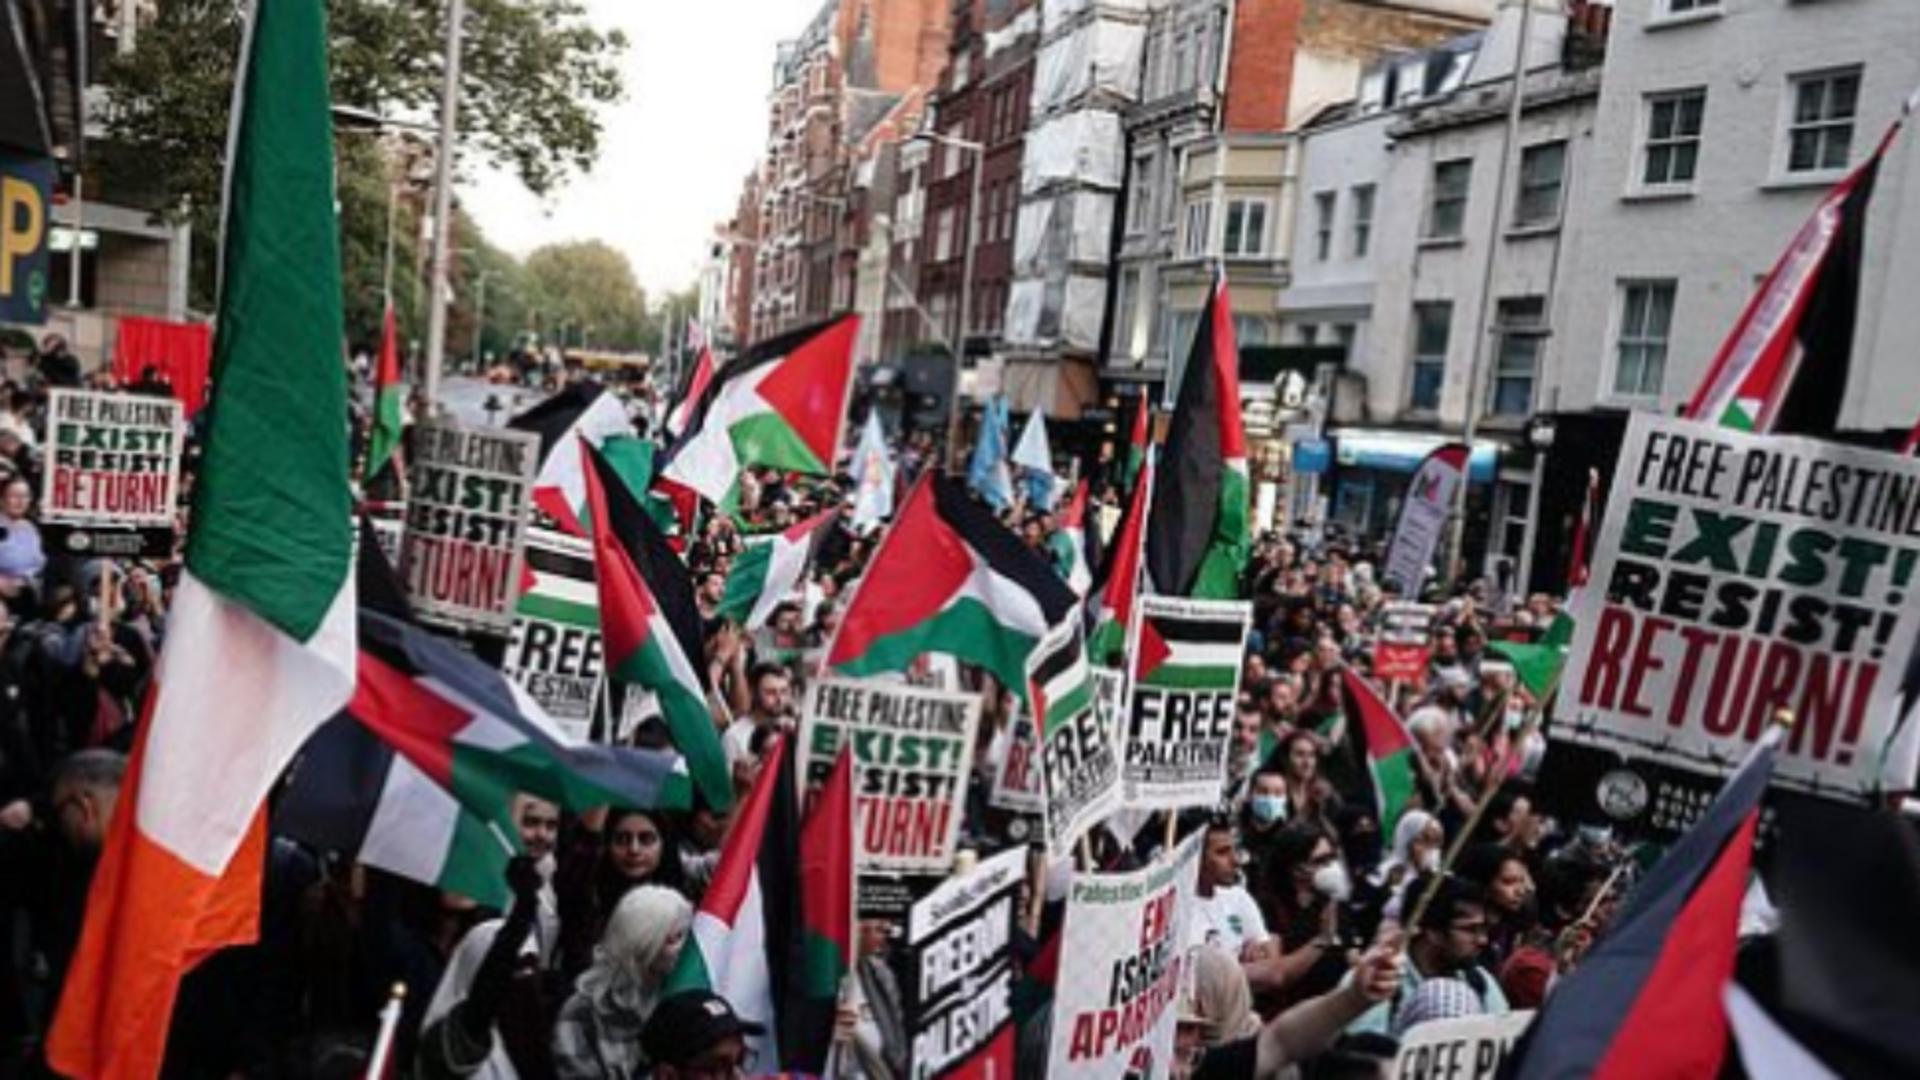 Conflictul din Israel a ajuns în Europa. Ciocniri violente între palestinieni și israelieni, la Londra /Captură Twitter